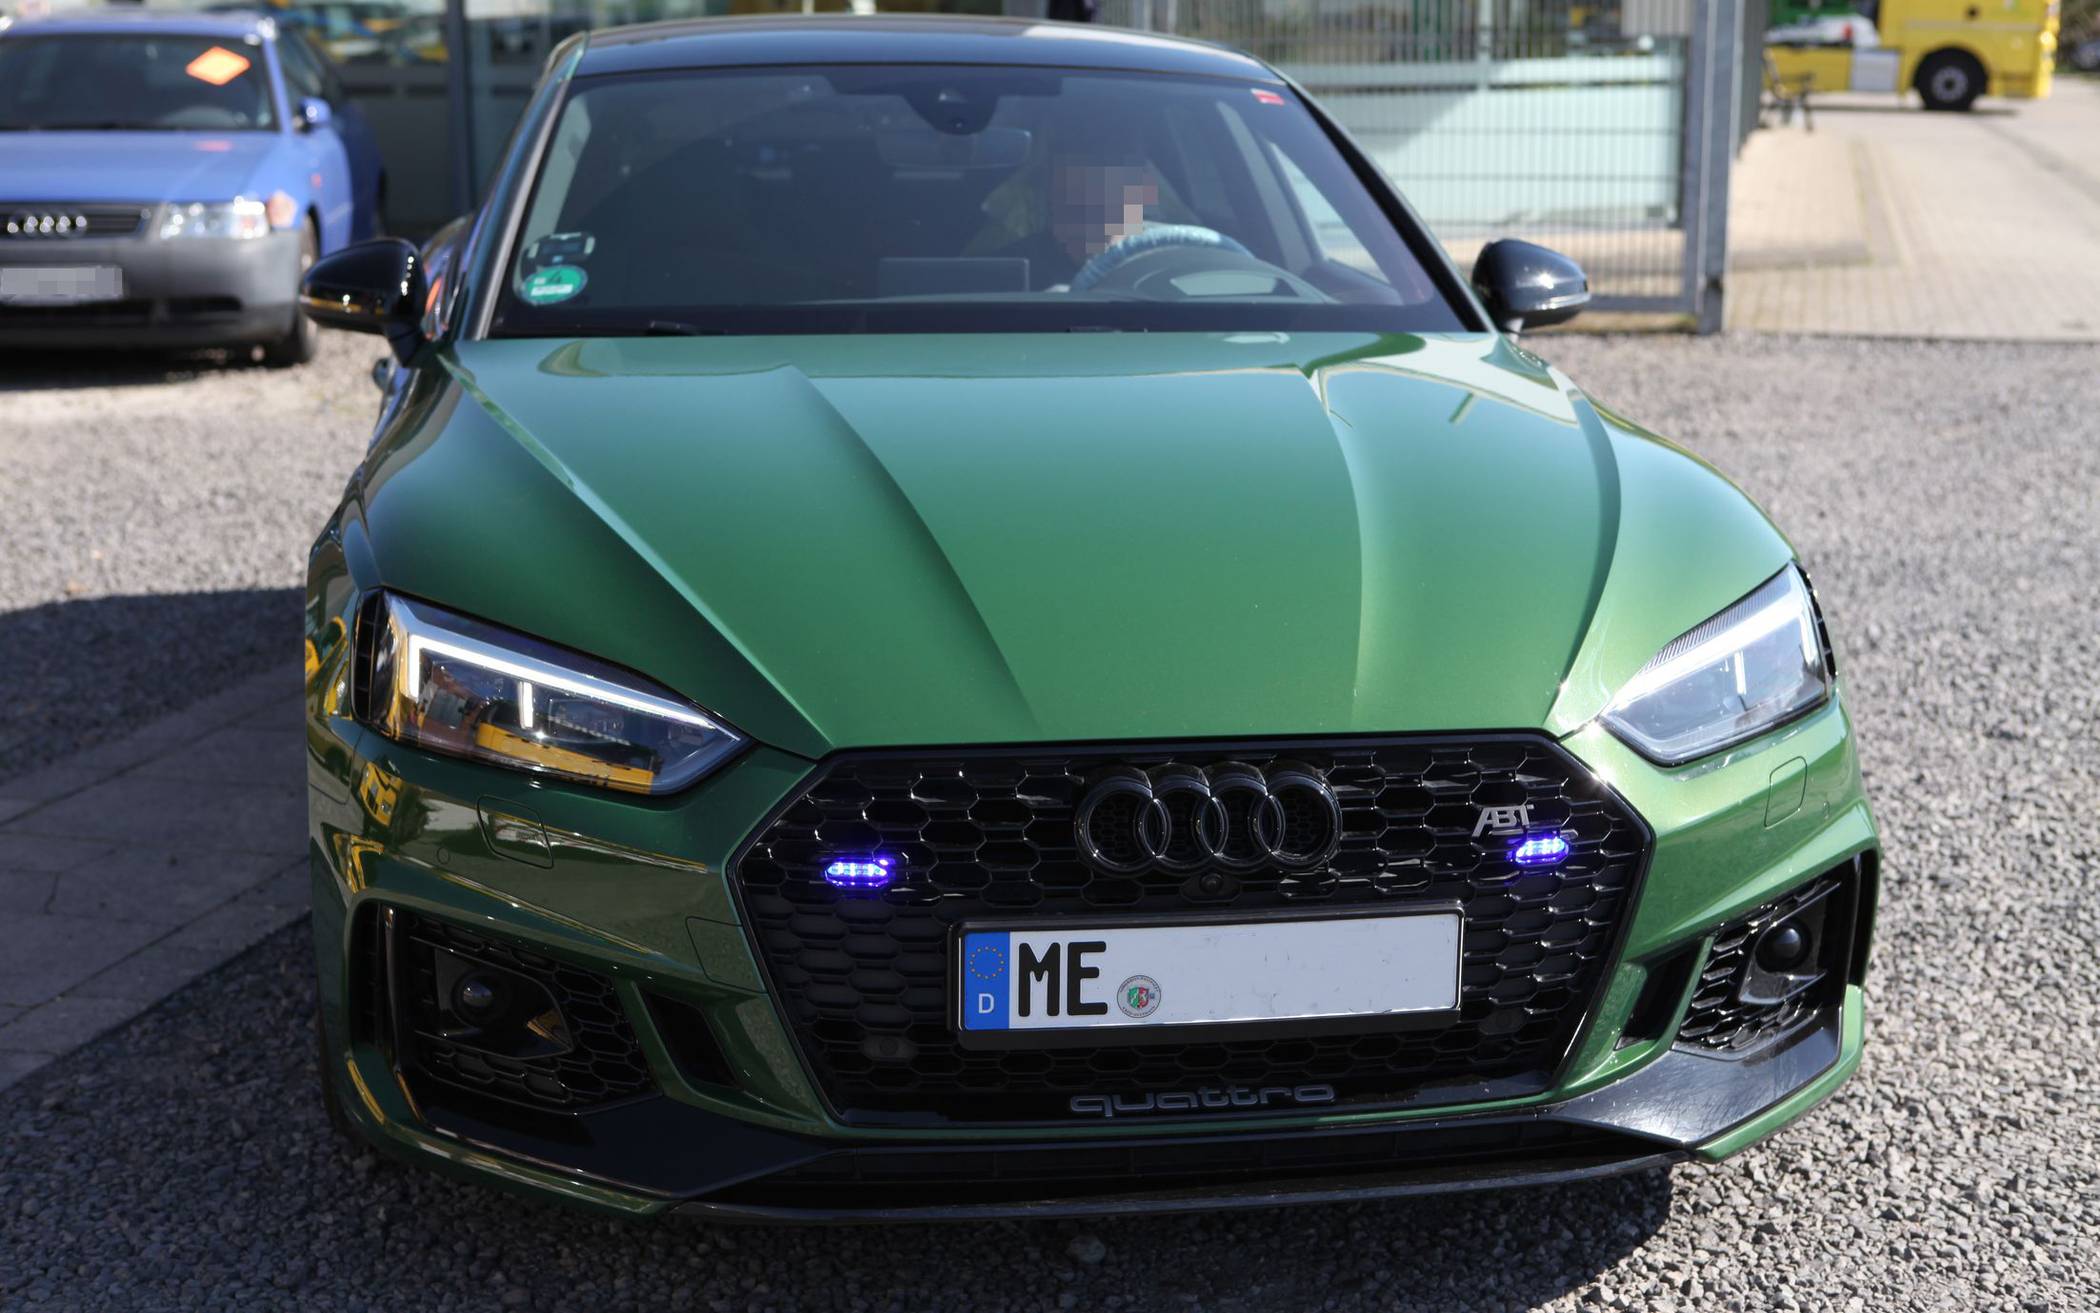 Auffälliger Audi mit eingebauten Blaulichtern sichergestellt - Halter kommt aus dem Kreis Metmann: Wo ist der Fahrer als Polizist aufgetreten?